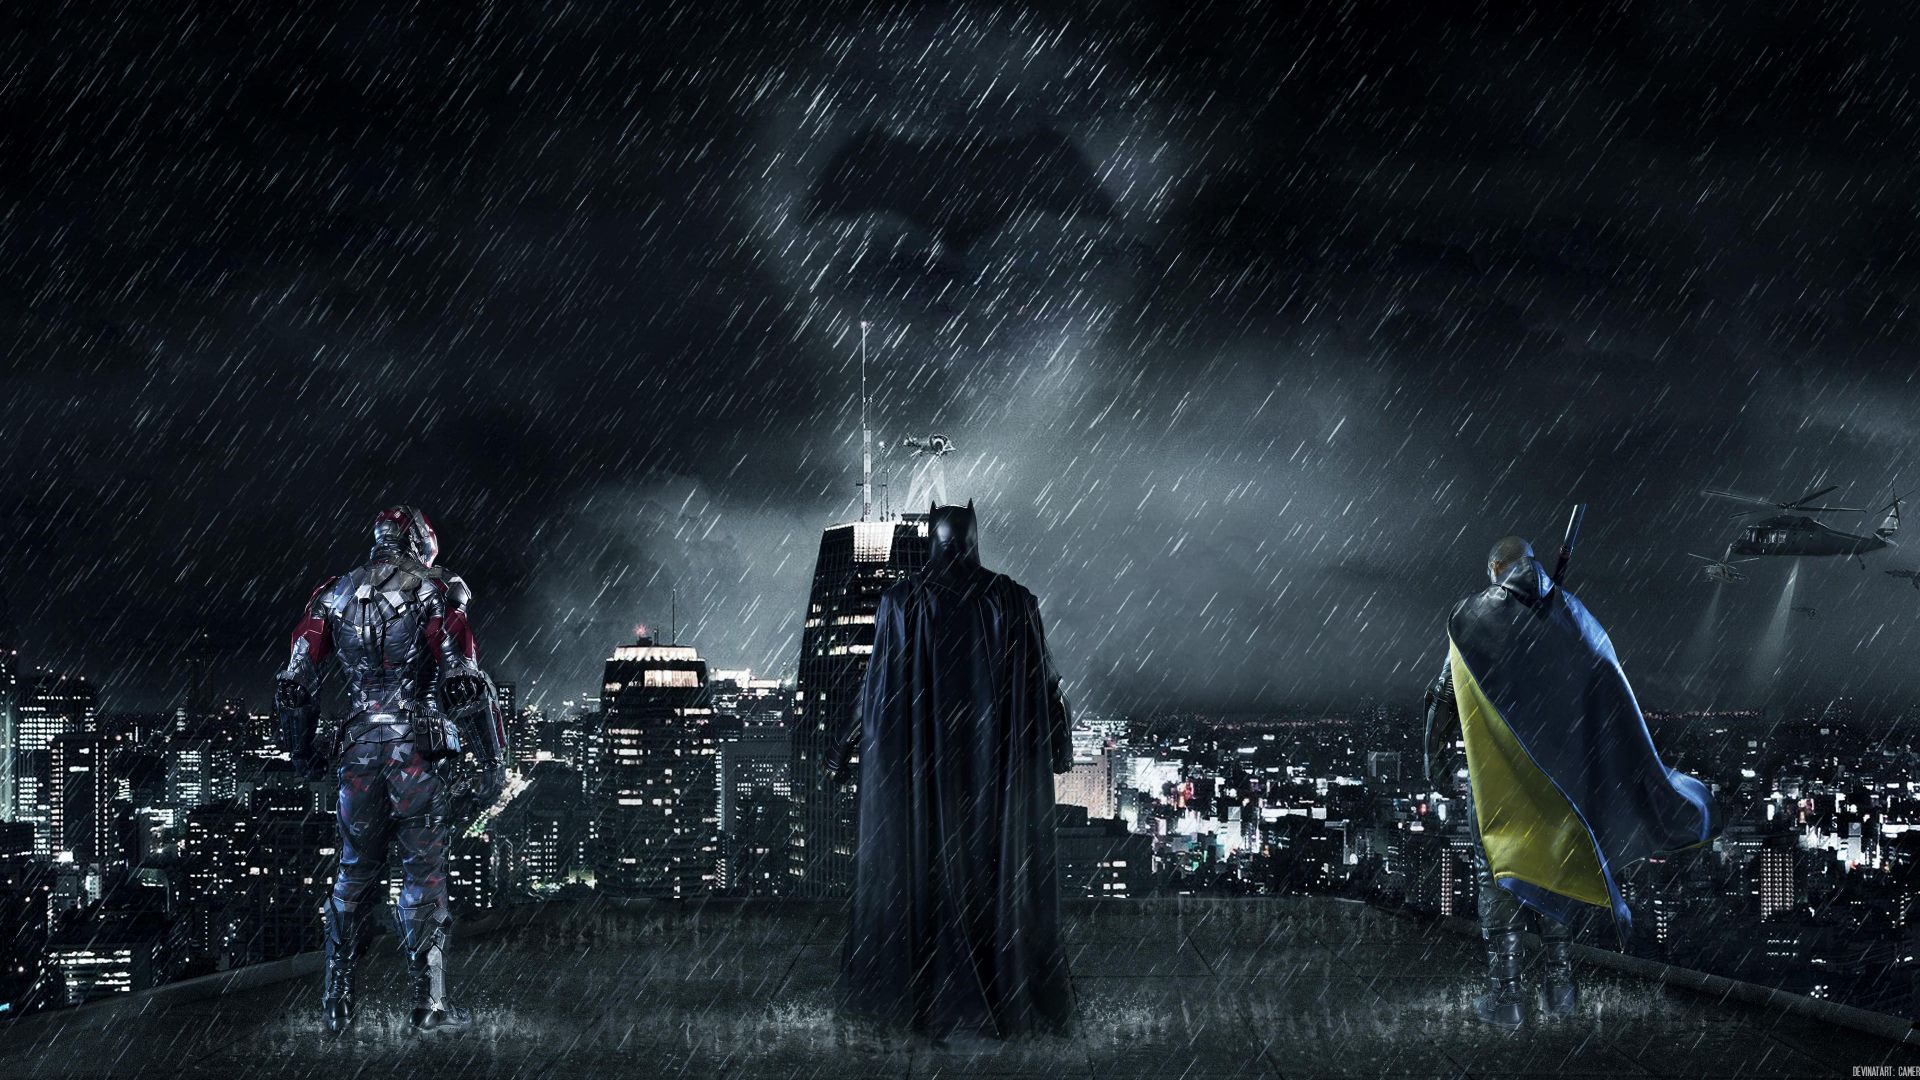 Desktop Wallpaper Batman Gotham City, Hd Image, Picture, Background, P H7zf